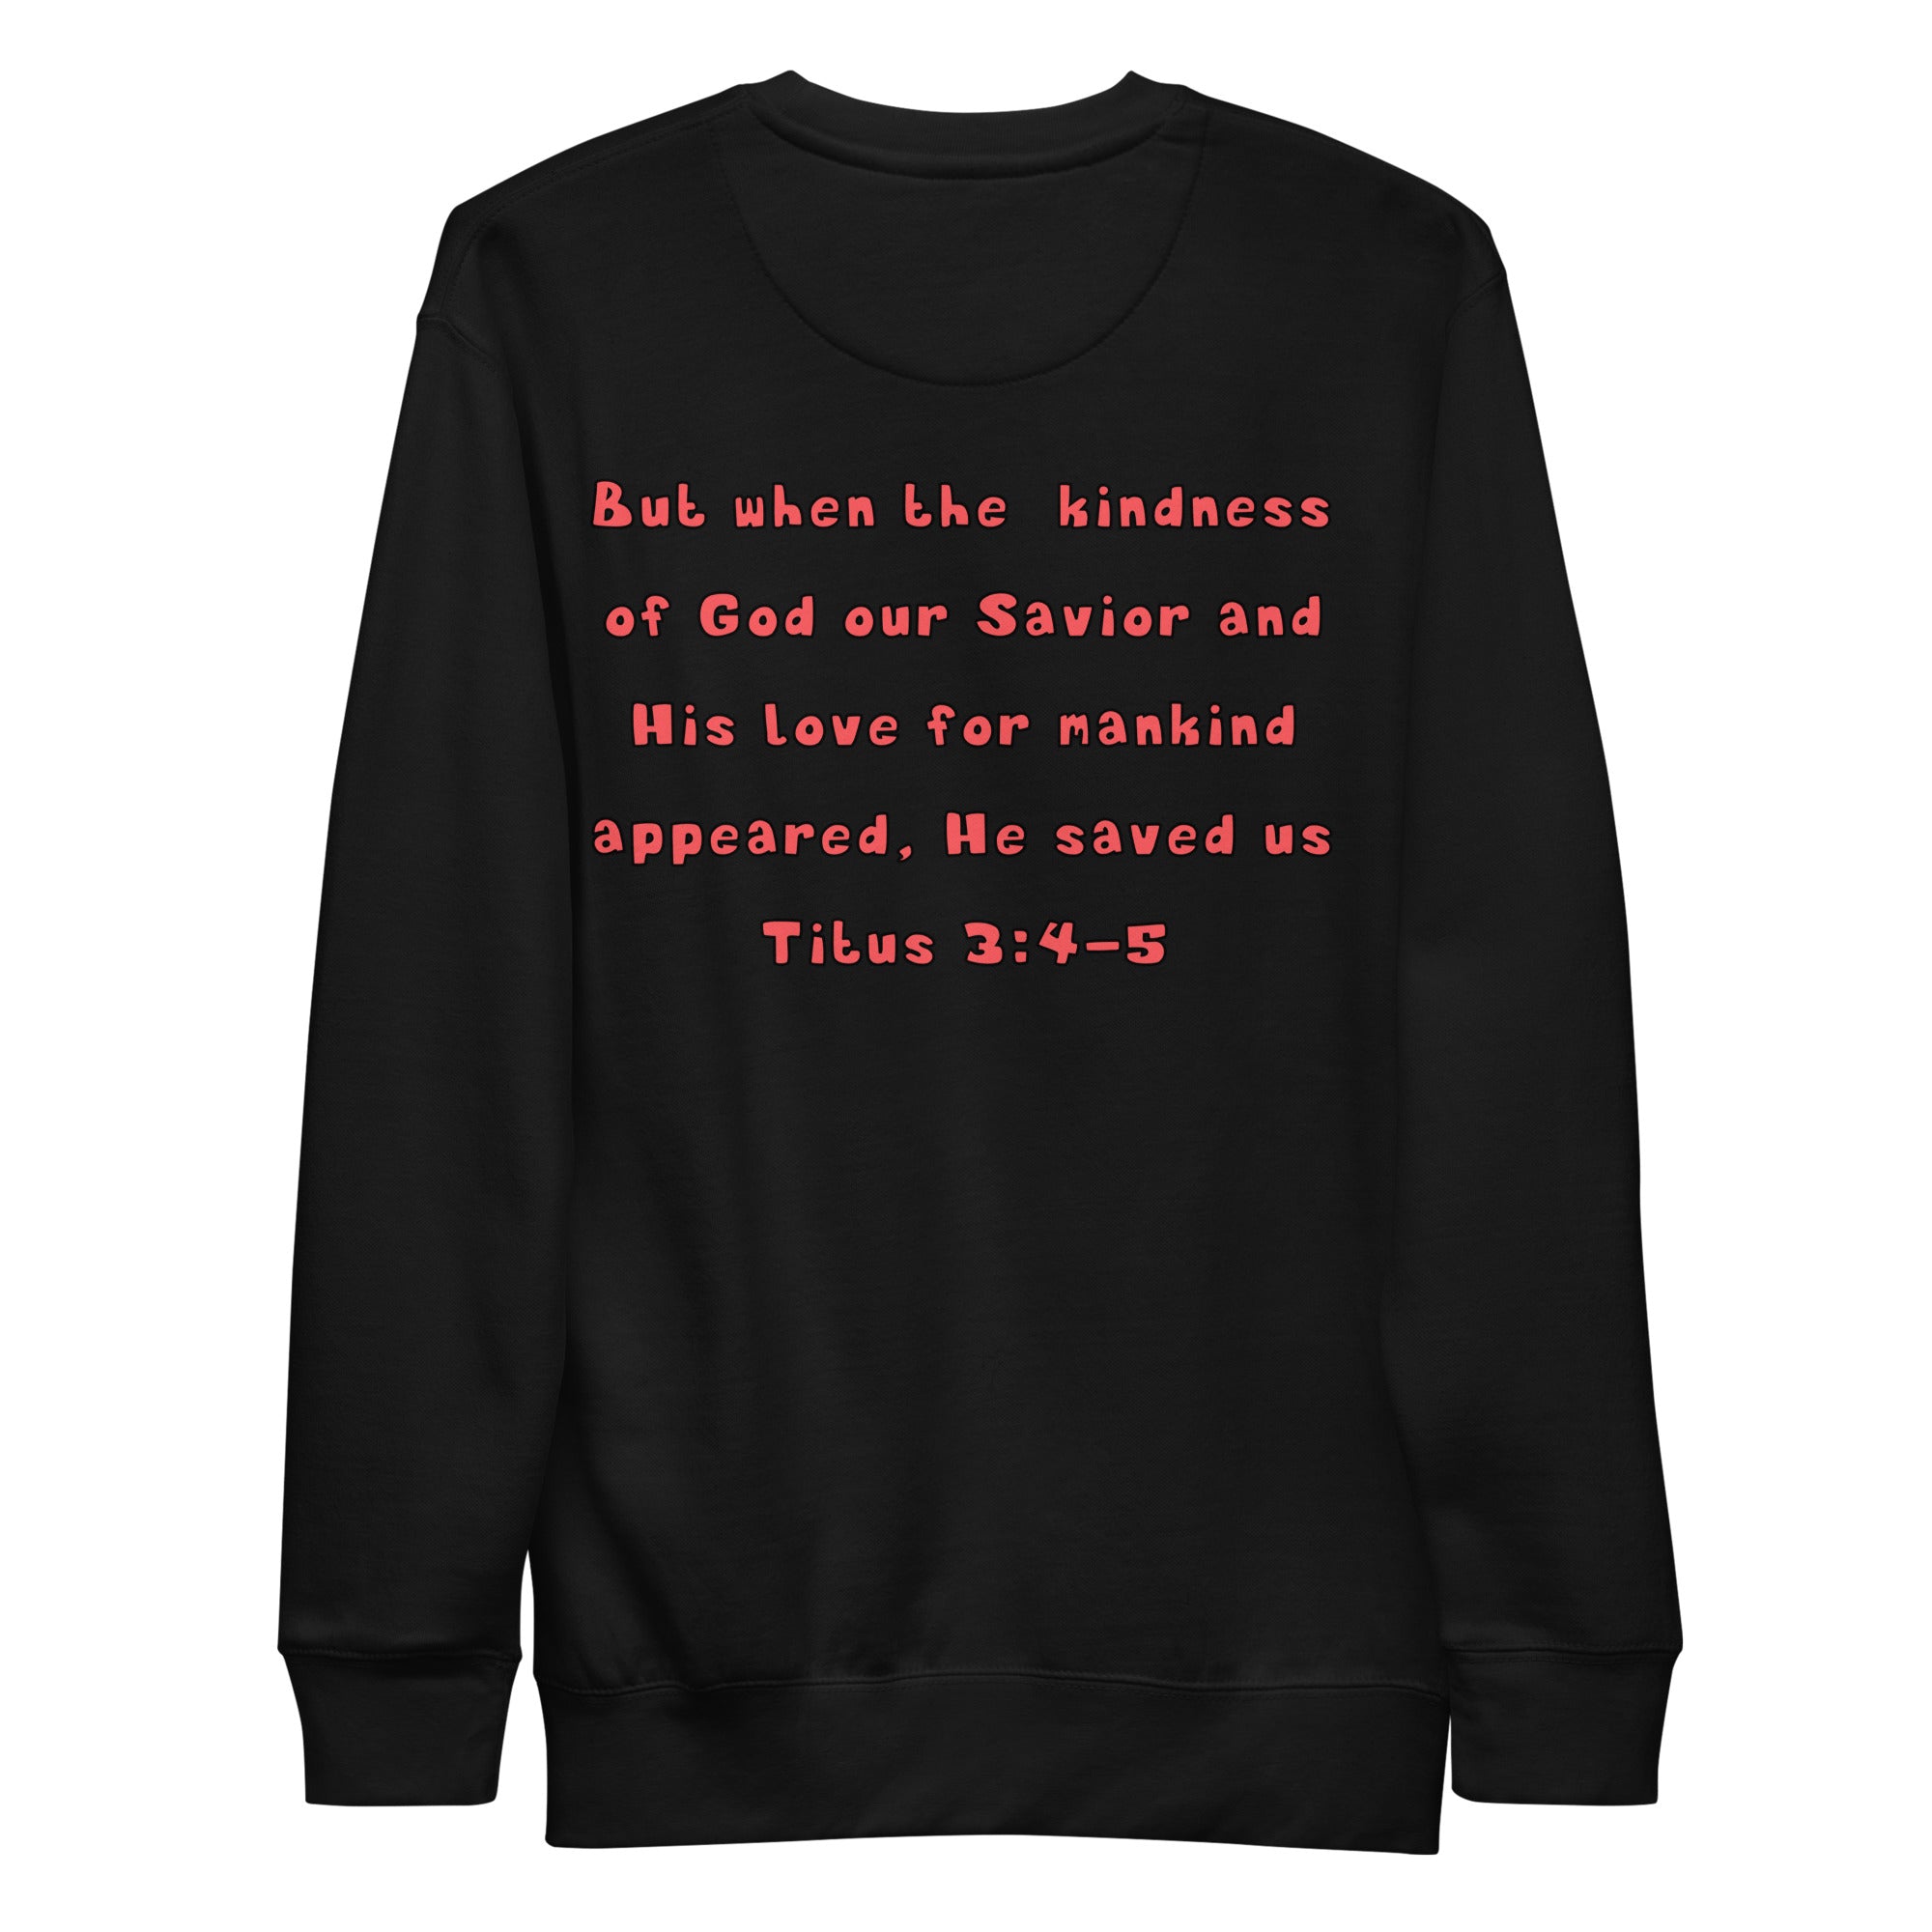 Preach Kindness Unisex Premium Sweatshirt